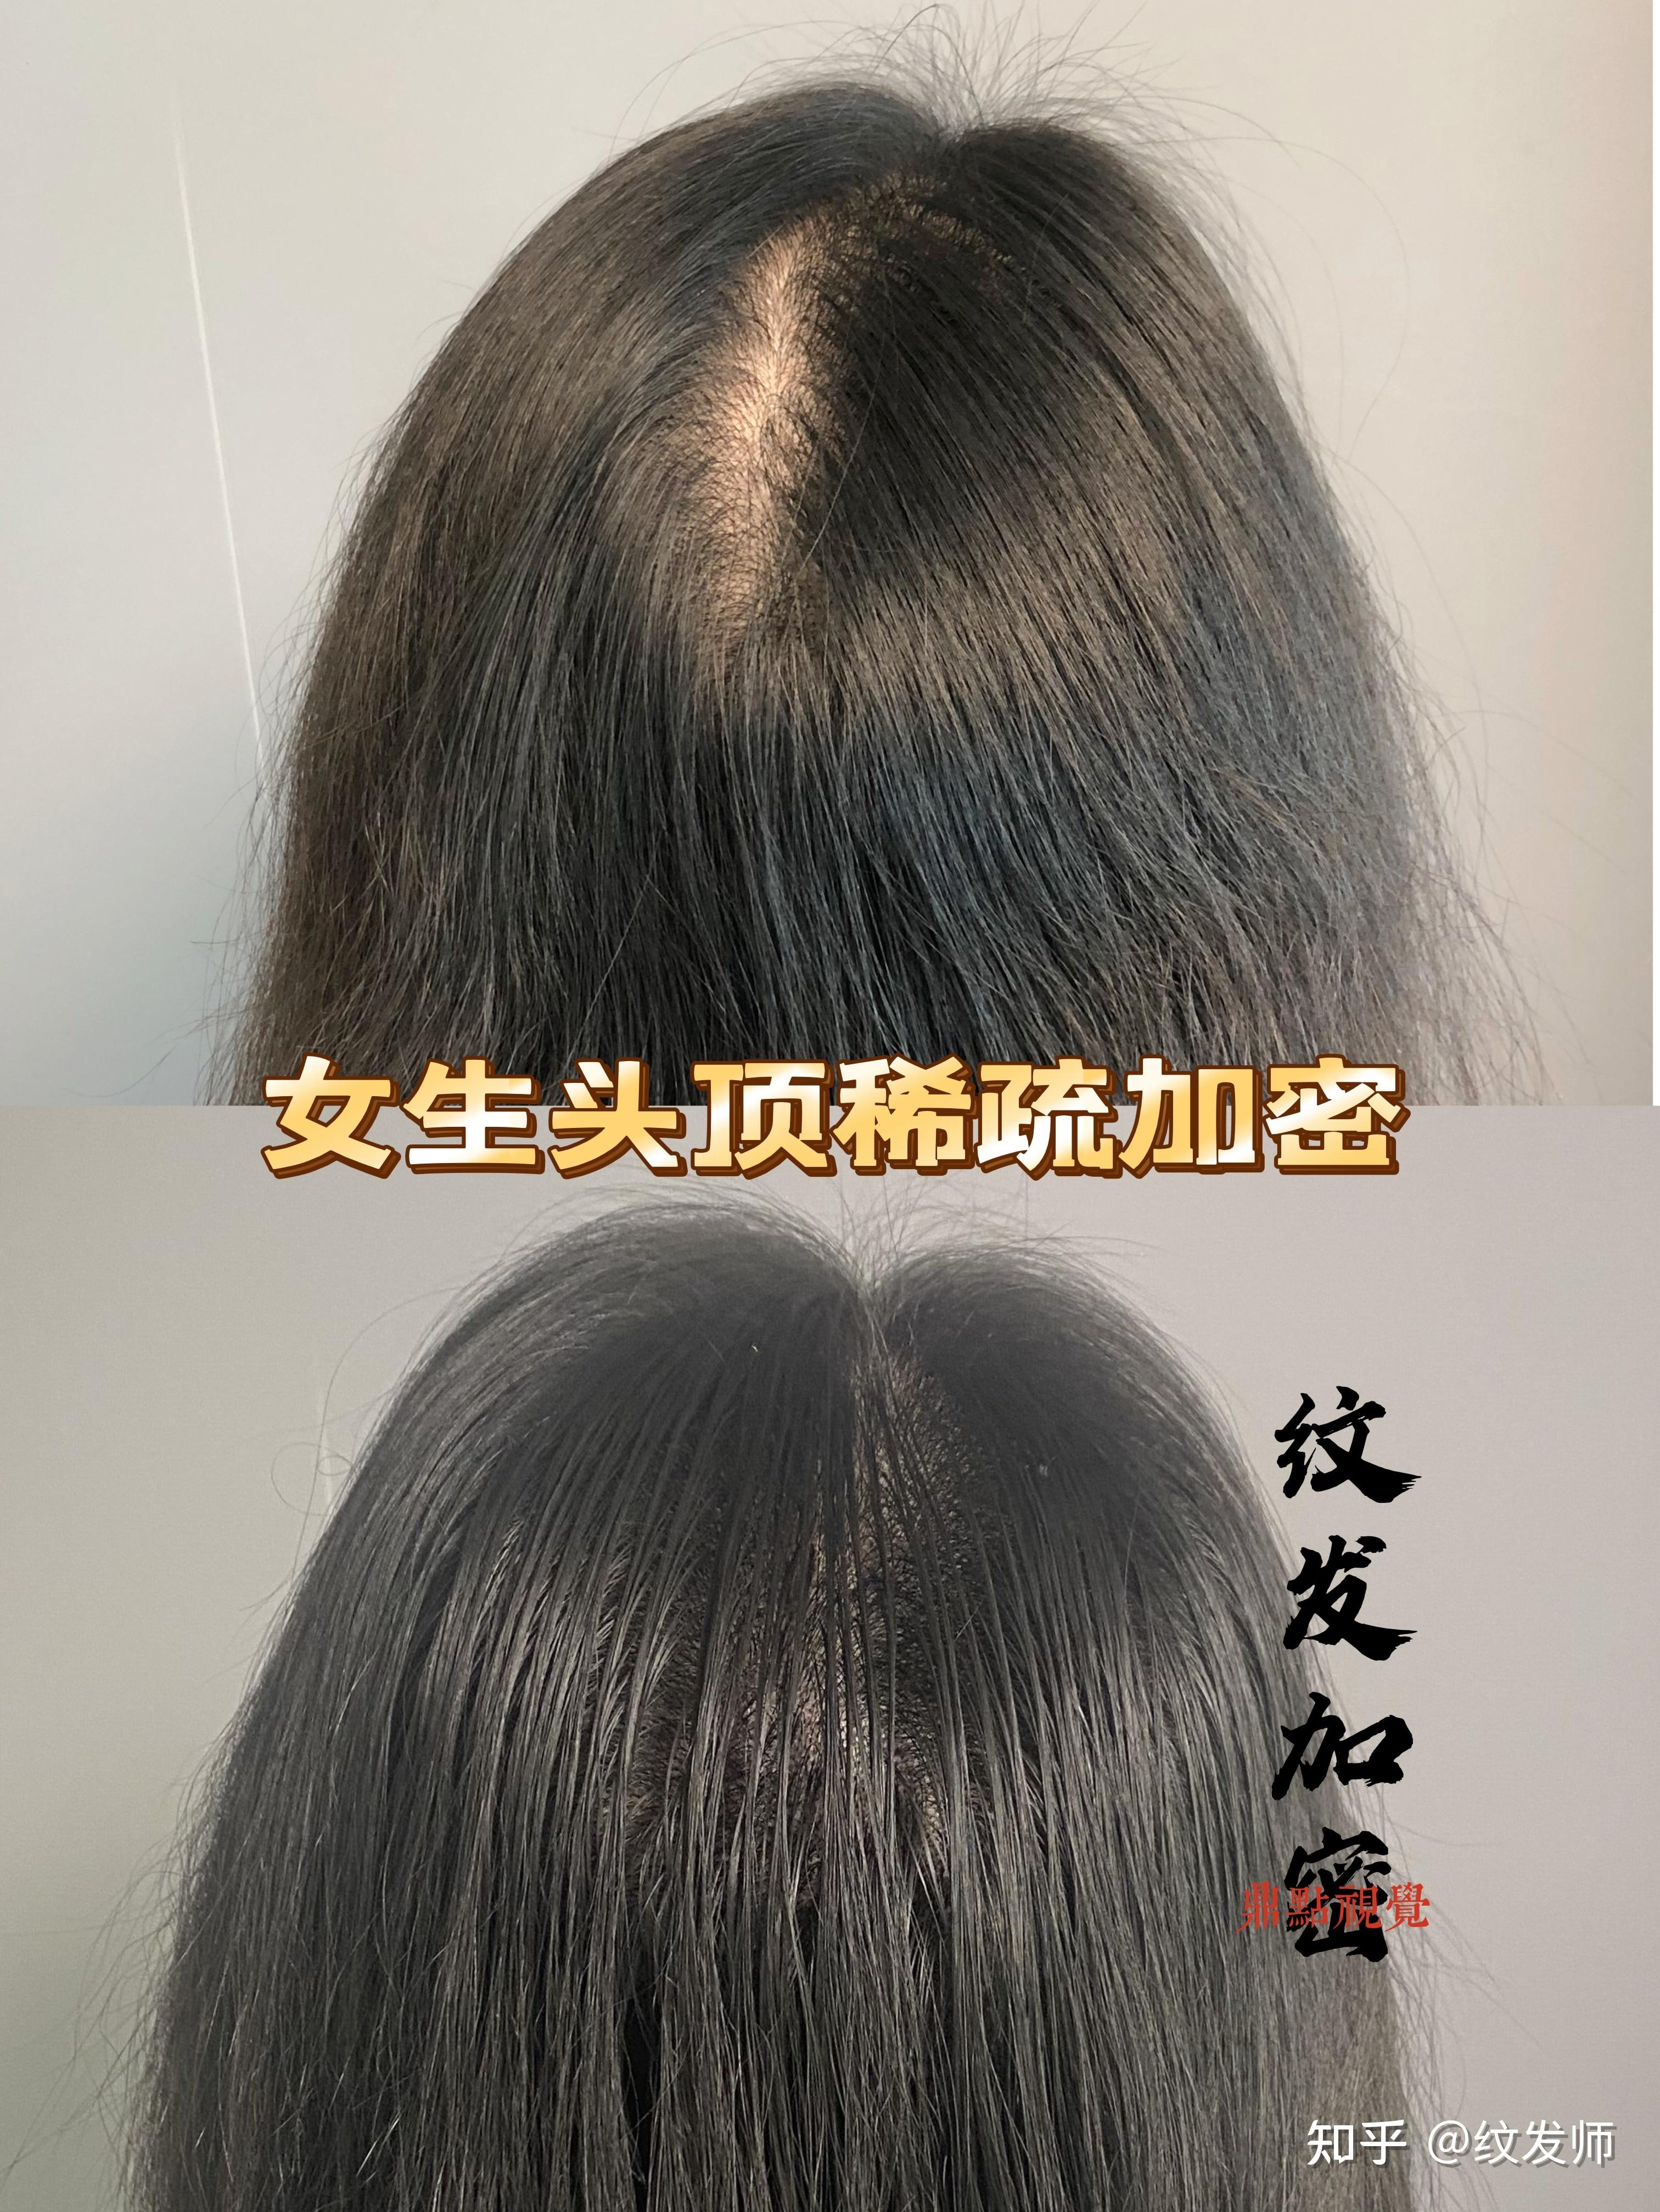 纹发对于女生头发稀疏,露头皮明显的改善效果如何?